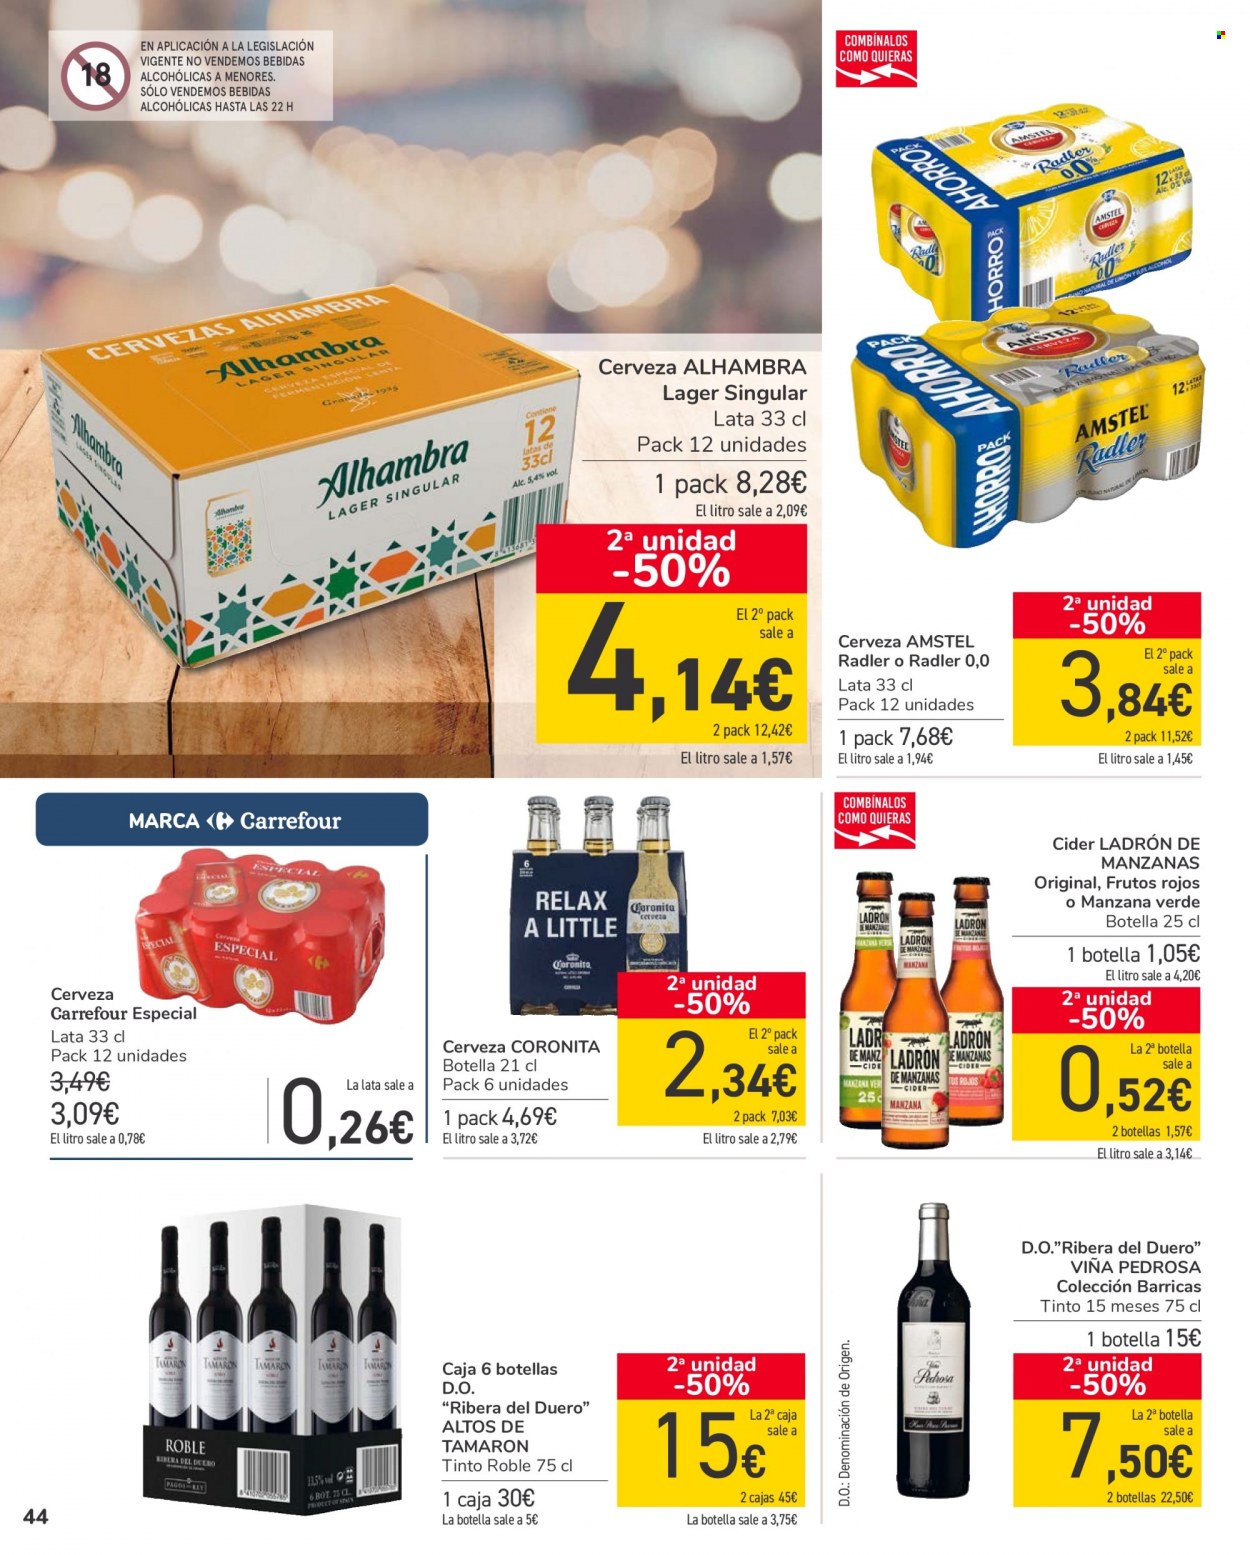 thumbnail - Folleto actual Carrefour - 18/01/22 - 27/01/22 - Ventas - Alhambra, cider, bebida, Ribera del Duero, Ladrón de Manzanas, bebida alcohólica. Página 44.